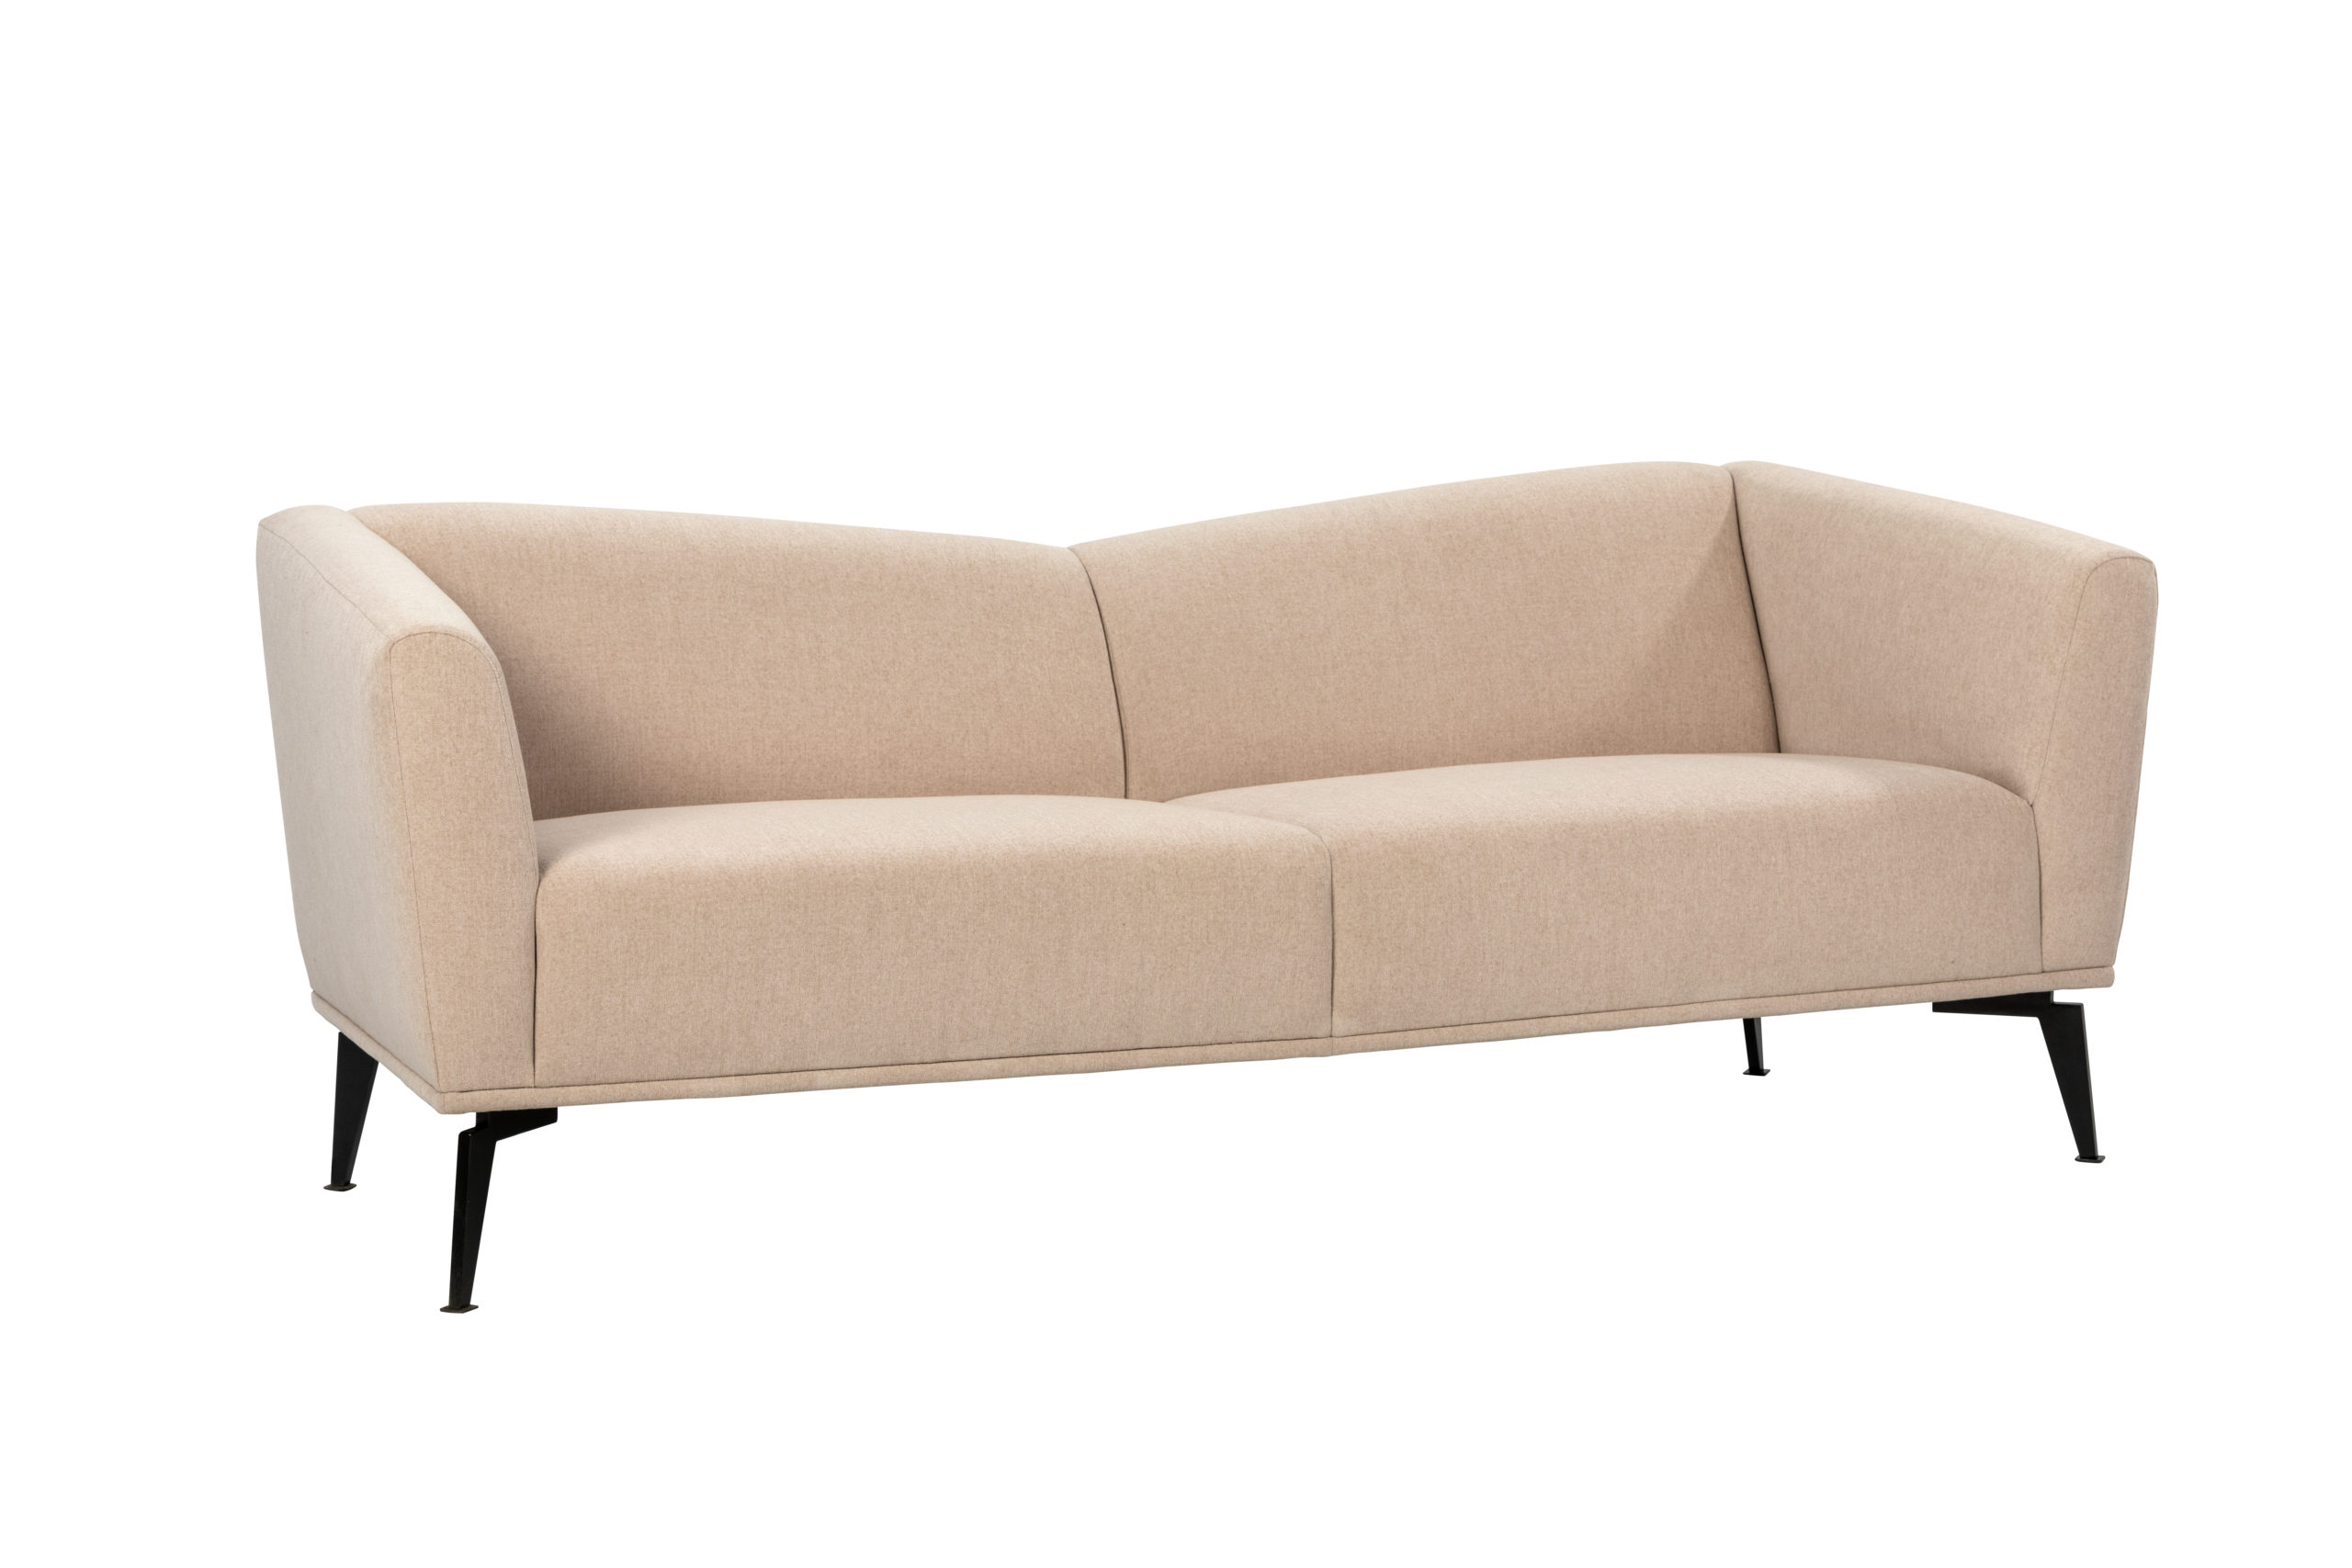 Maverick sofa